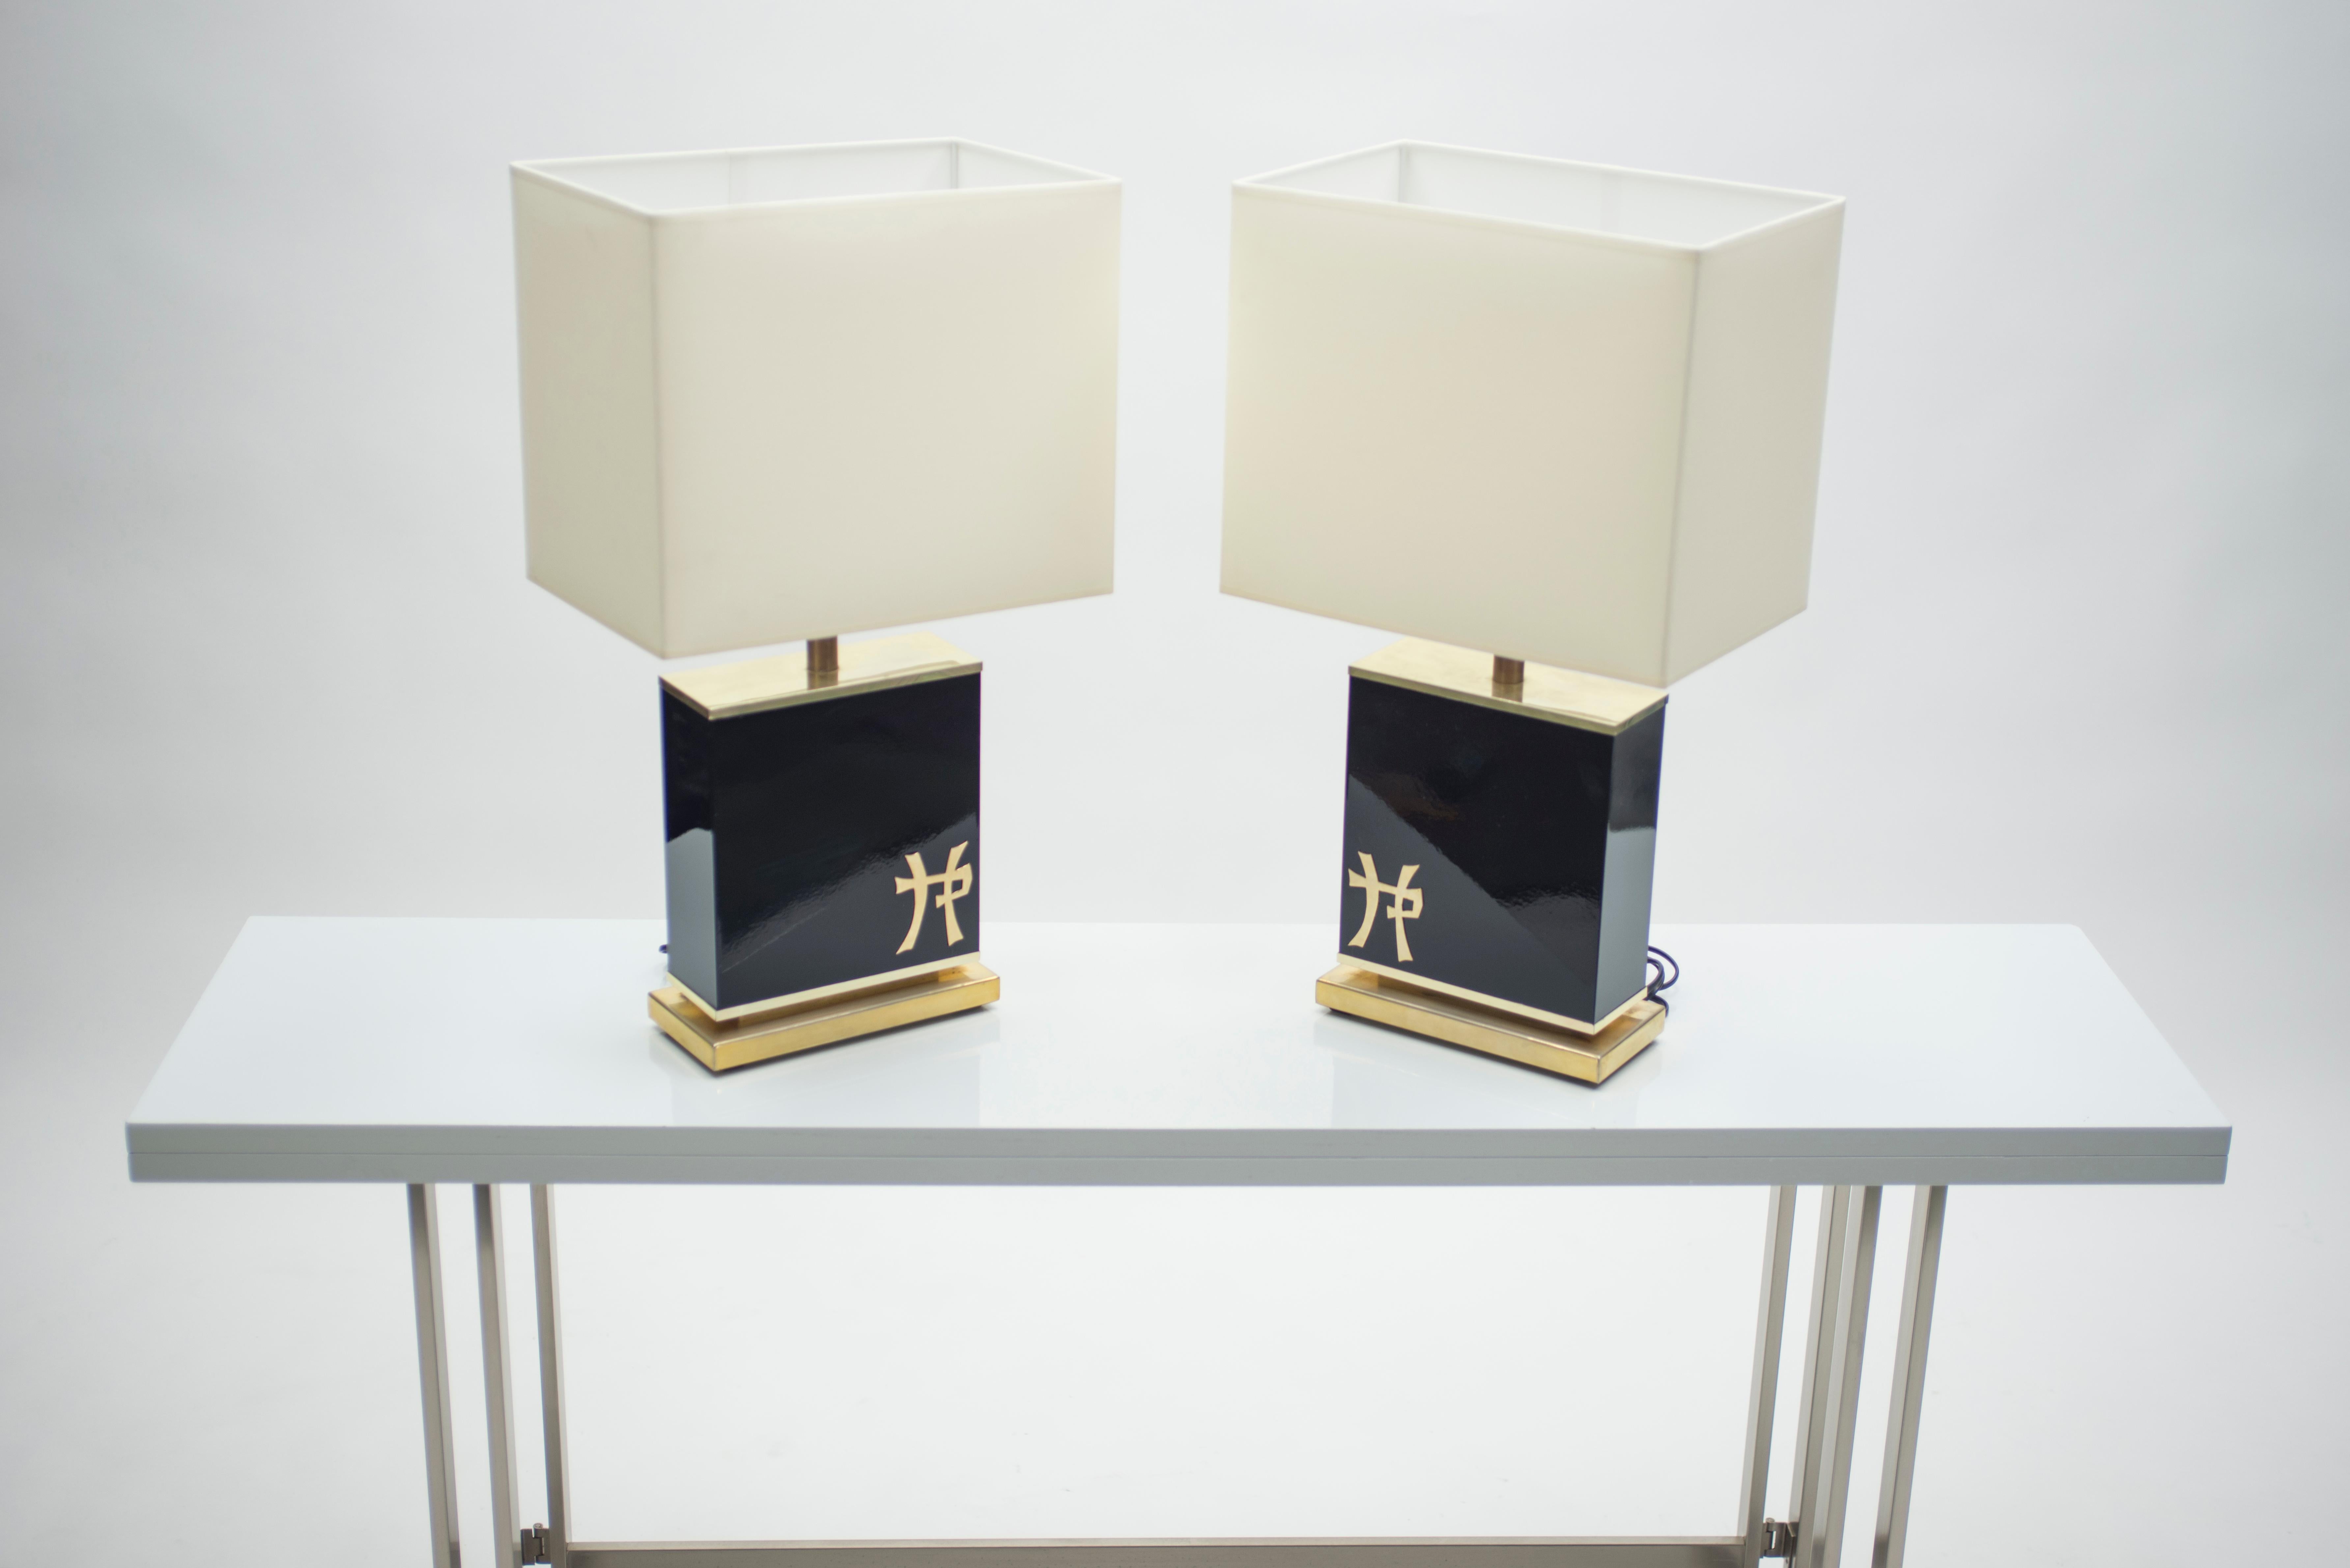 Cette paire de lampes est typique de l'œuvre en laiton et en laque du designer Jean Claude Mahey, datant du milieu du siècle dernier. Une riche base en laque noire donne une impression de sérieux et de sophistication et est compensée par des accents